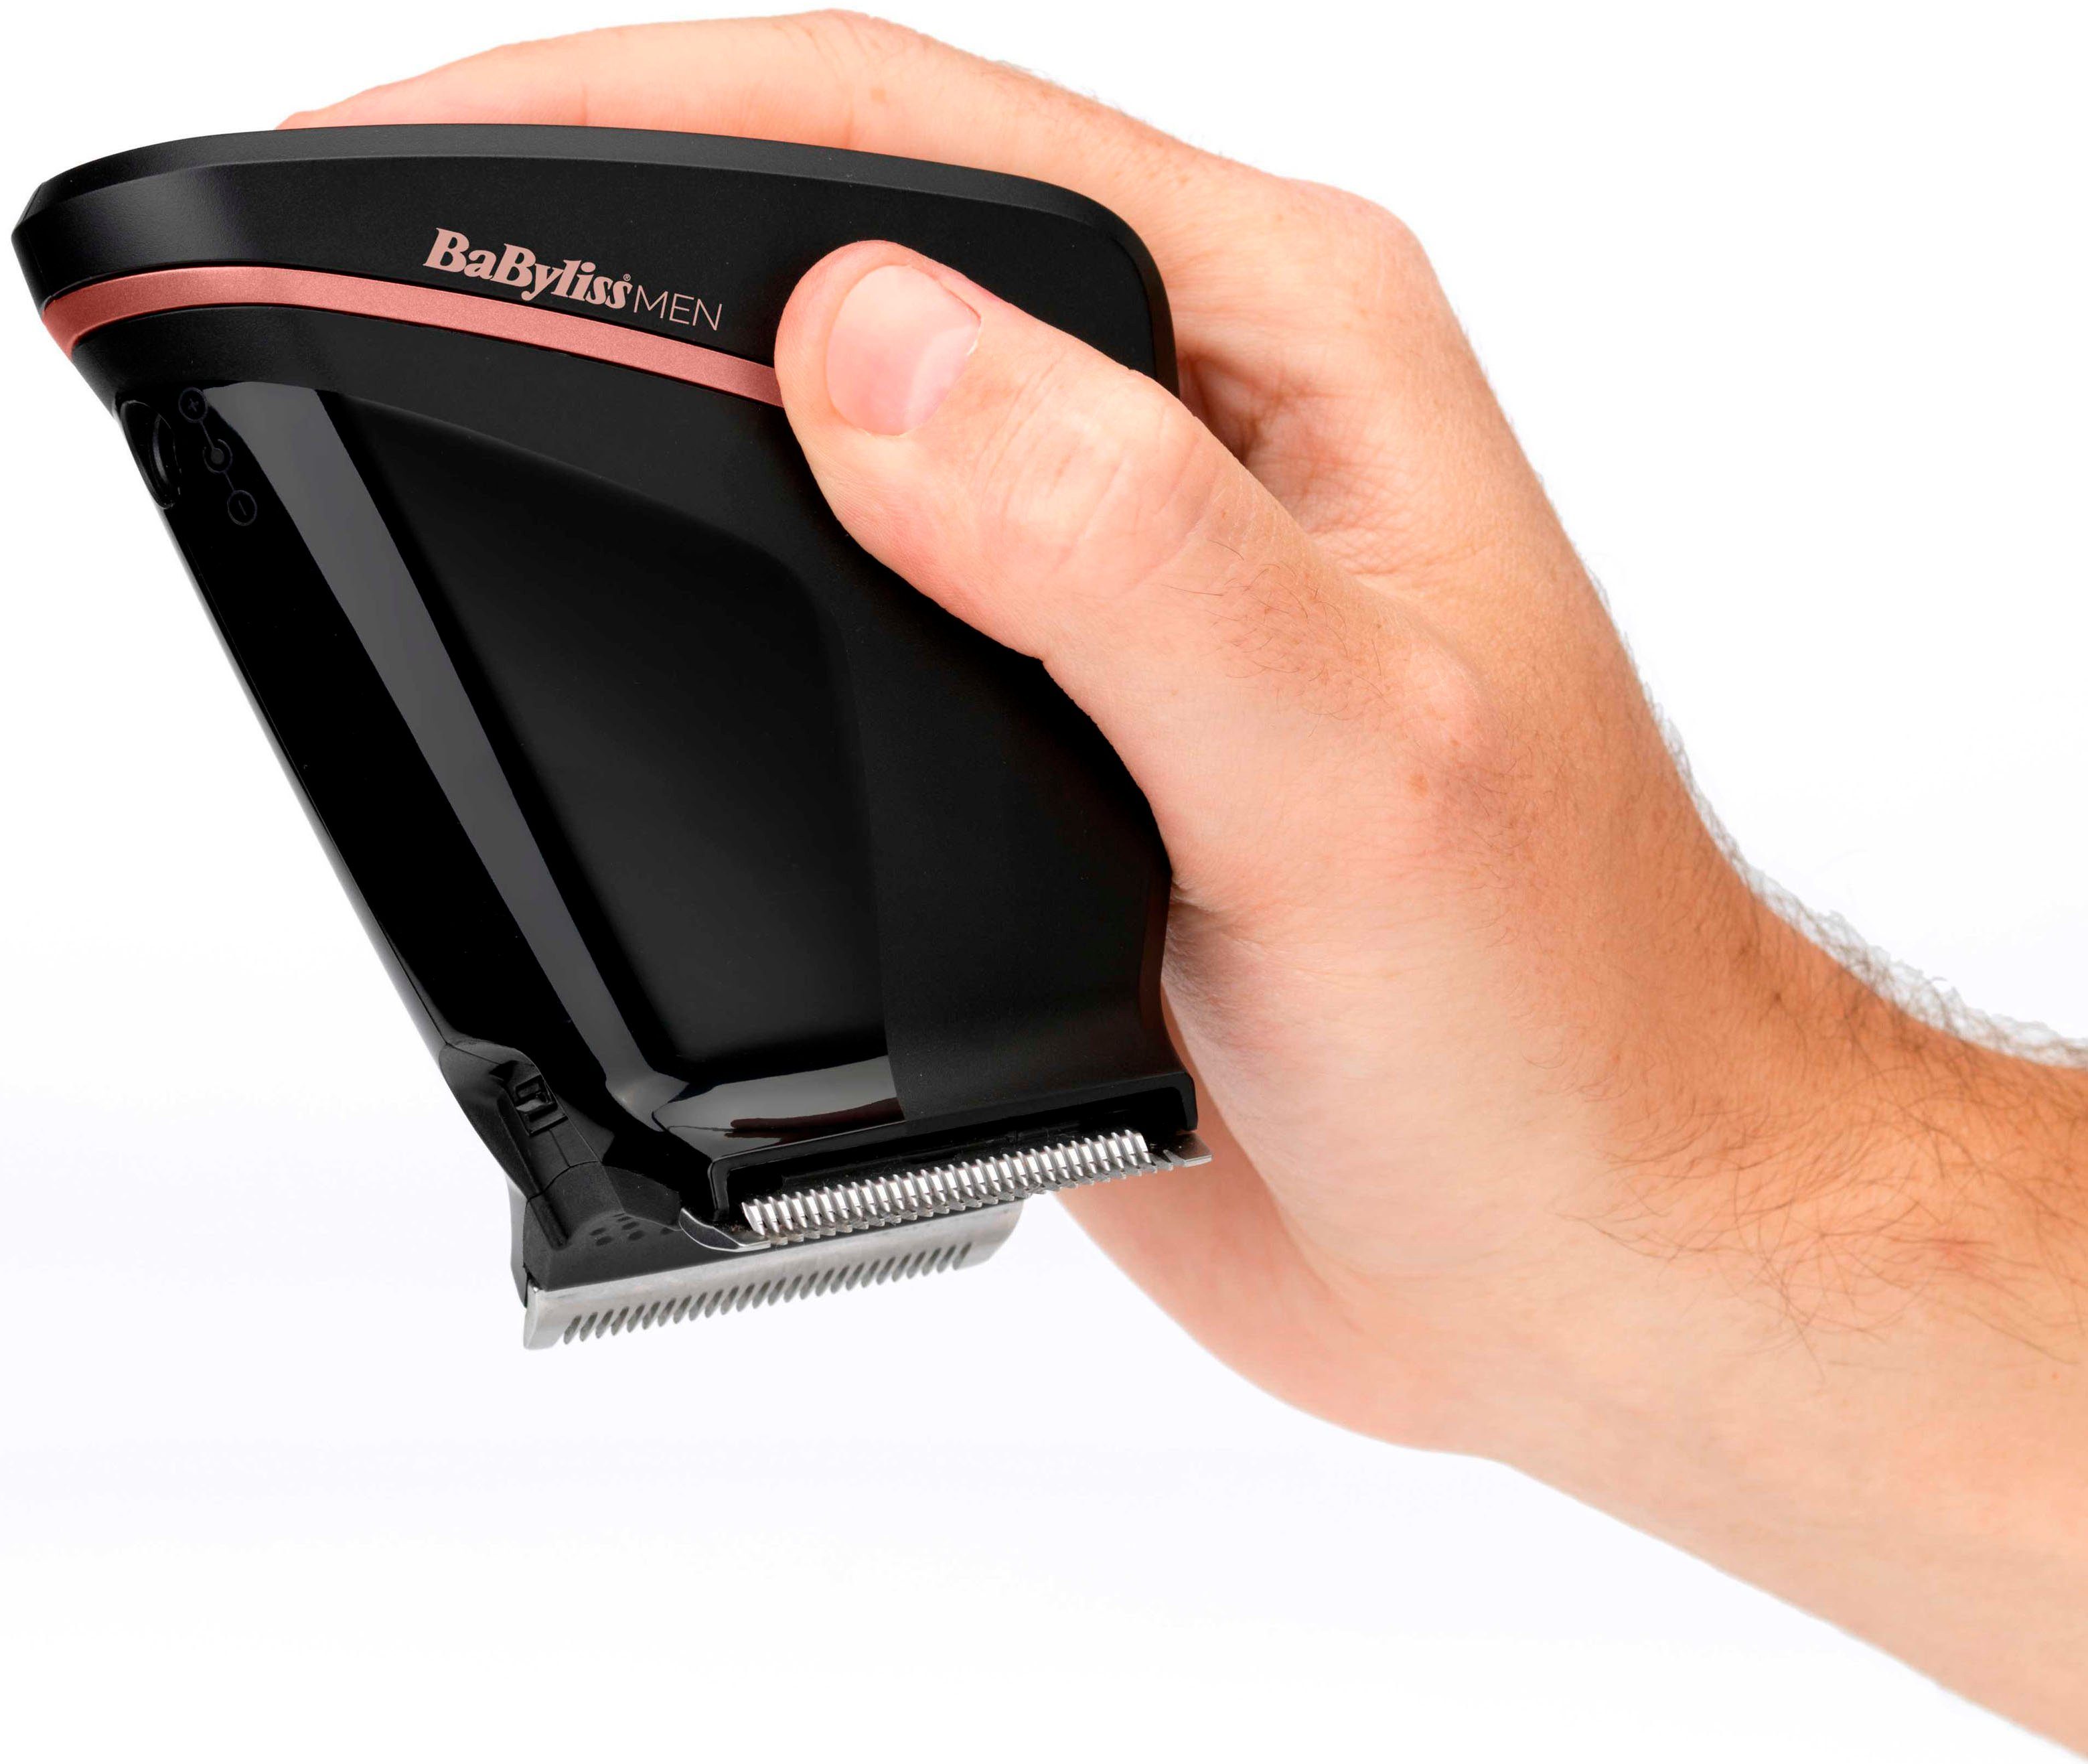 MEN Crewcut, 0,3-13mm Design ergonomischer BaByliss SC758E Haarschneider Haarschneider